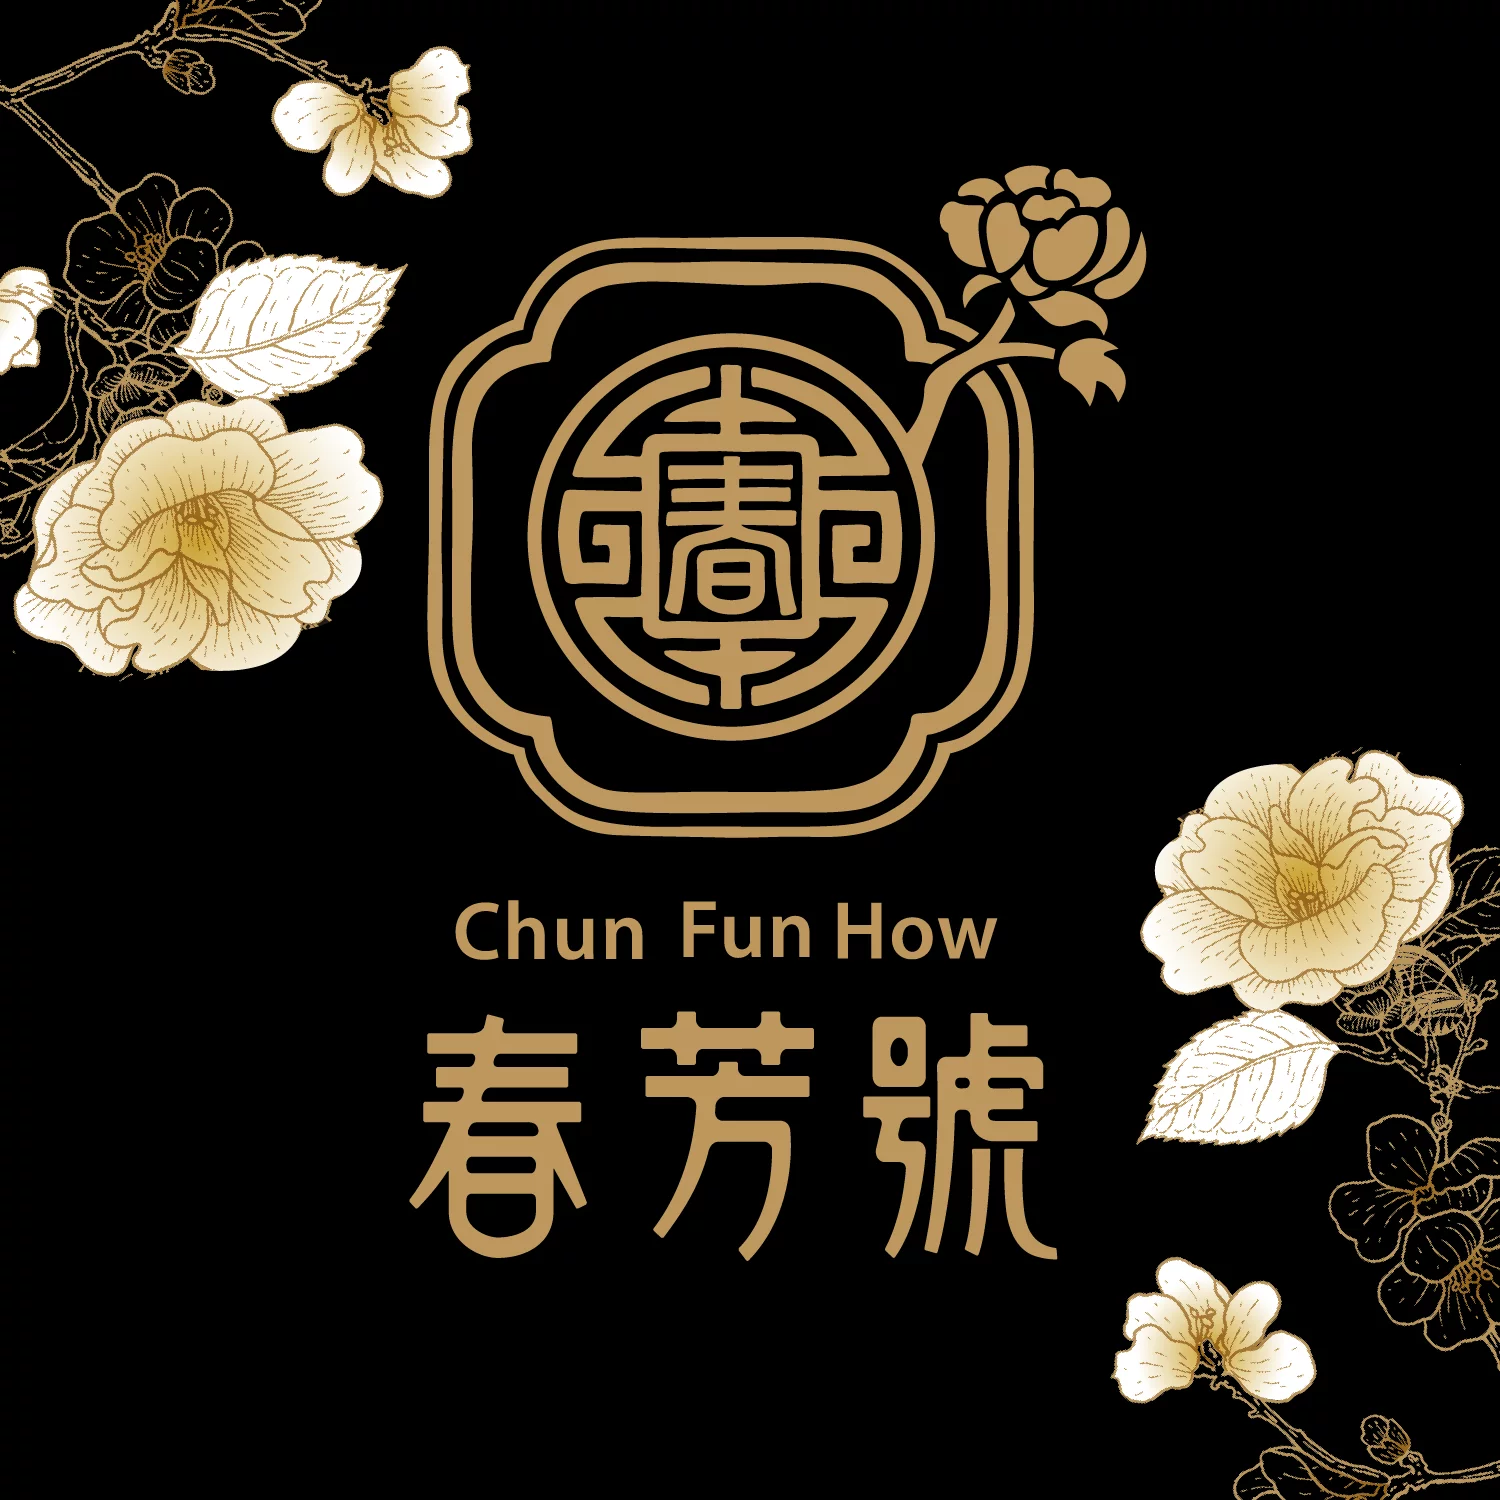 chunfunhow1.png